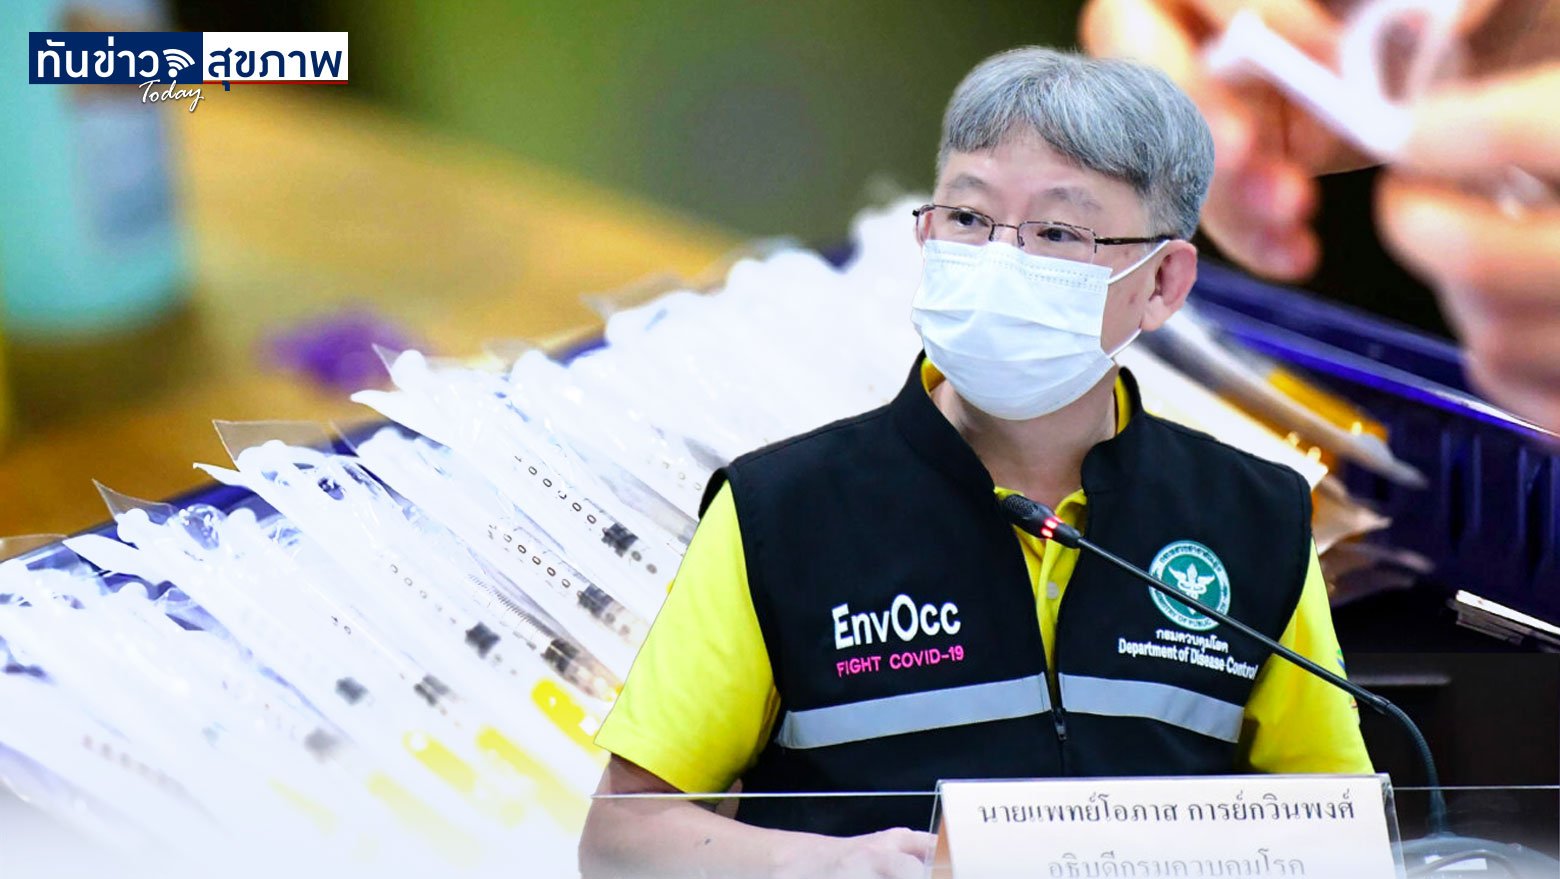 กลุ่มที่ยังไม่ยอมฉีดวัคซีนที่จัดเป็น ‘ฮาร์ดคอร์ทางการแพทย์’ ในไทย มีถึง 7-8 ล้านคน! เสี่ยงอย่างไร?